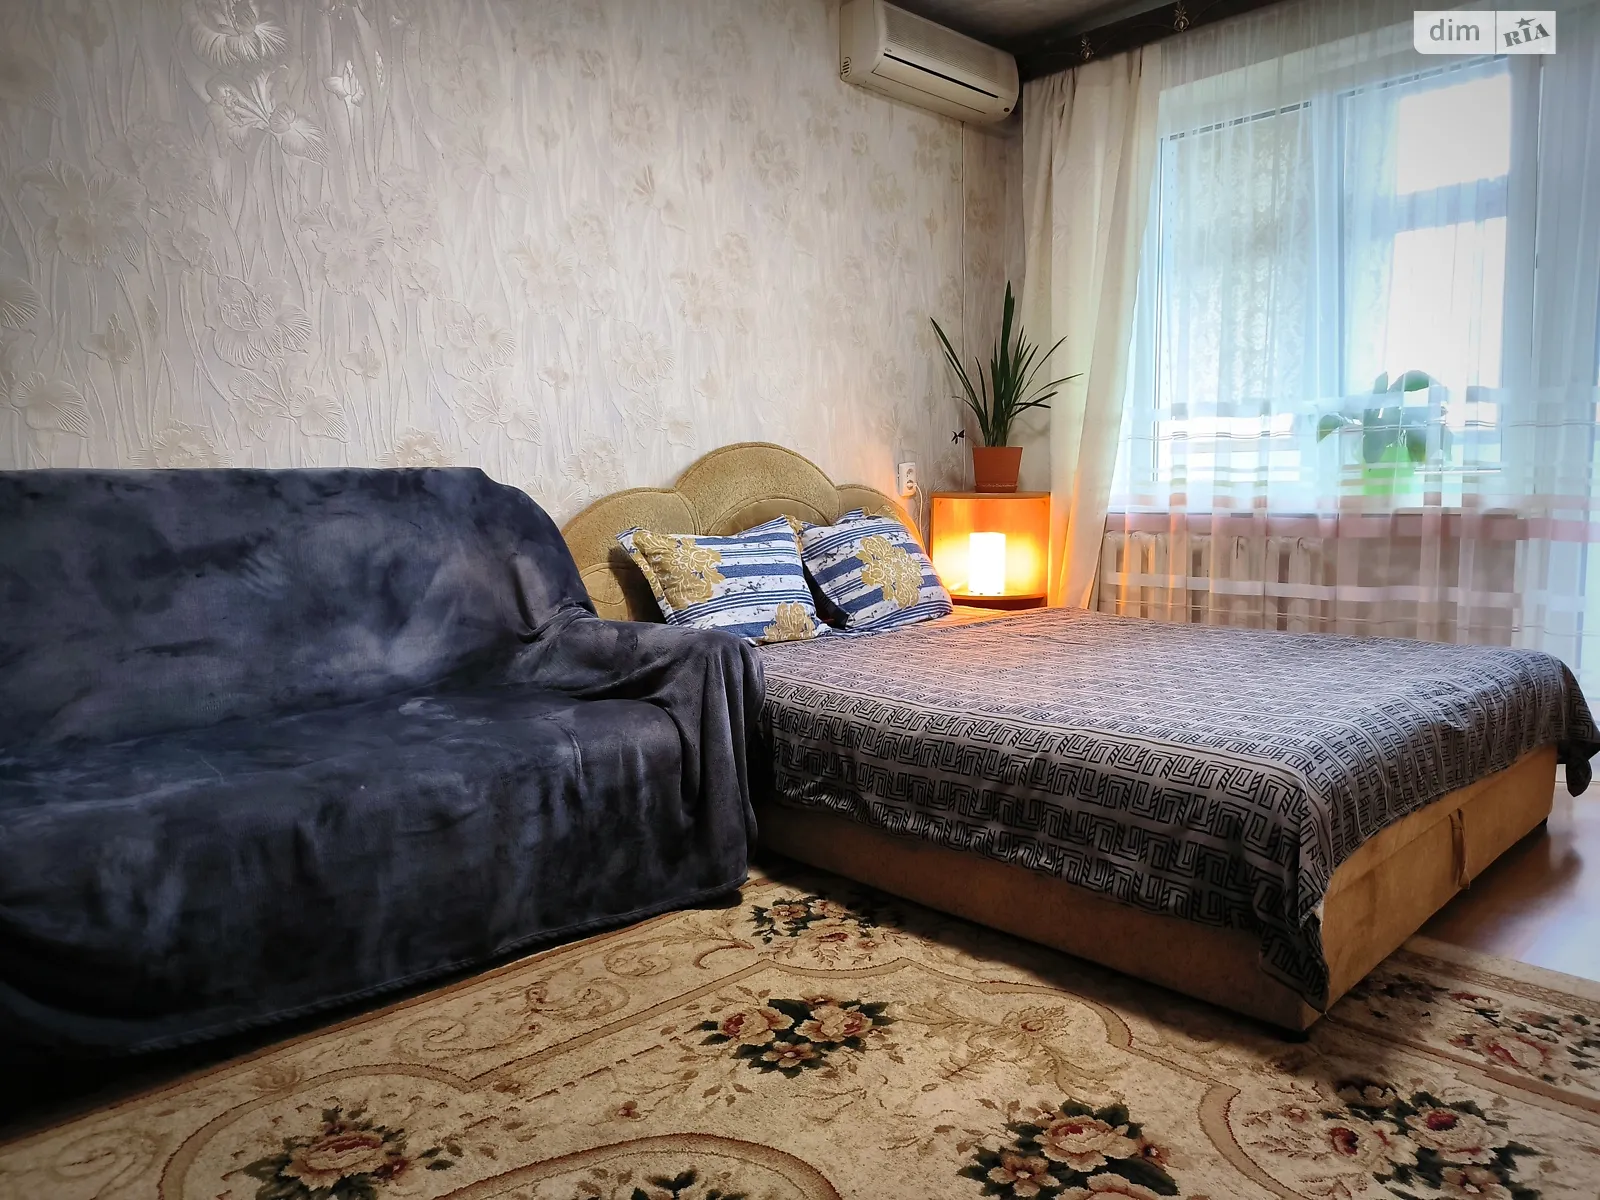 Здається в оренду 1-кімнатна квартира у Дніпрі, цена: 850 грн